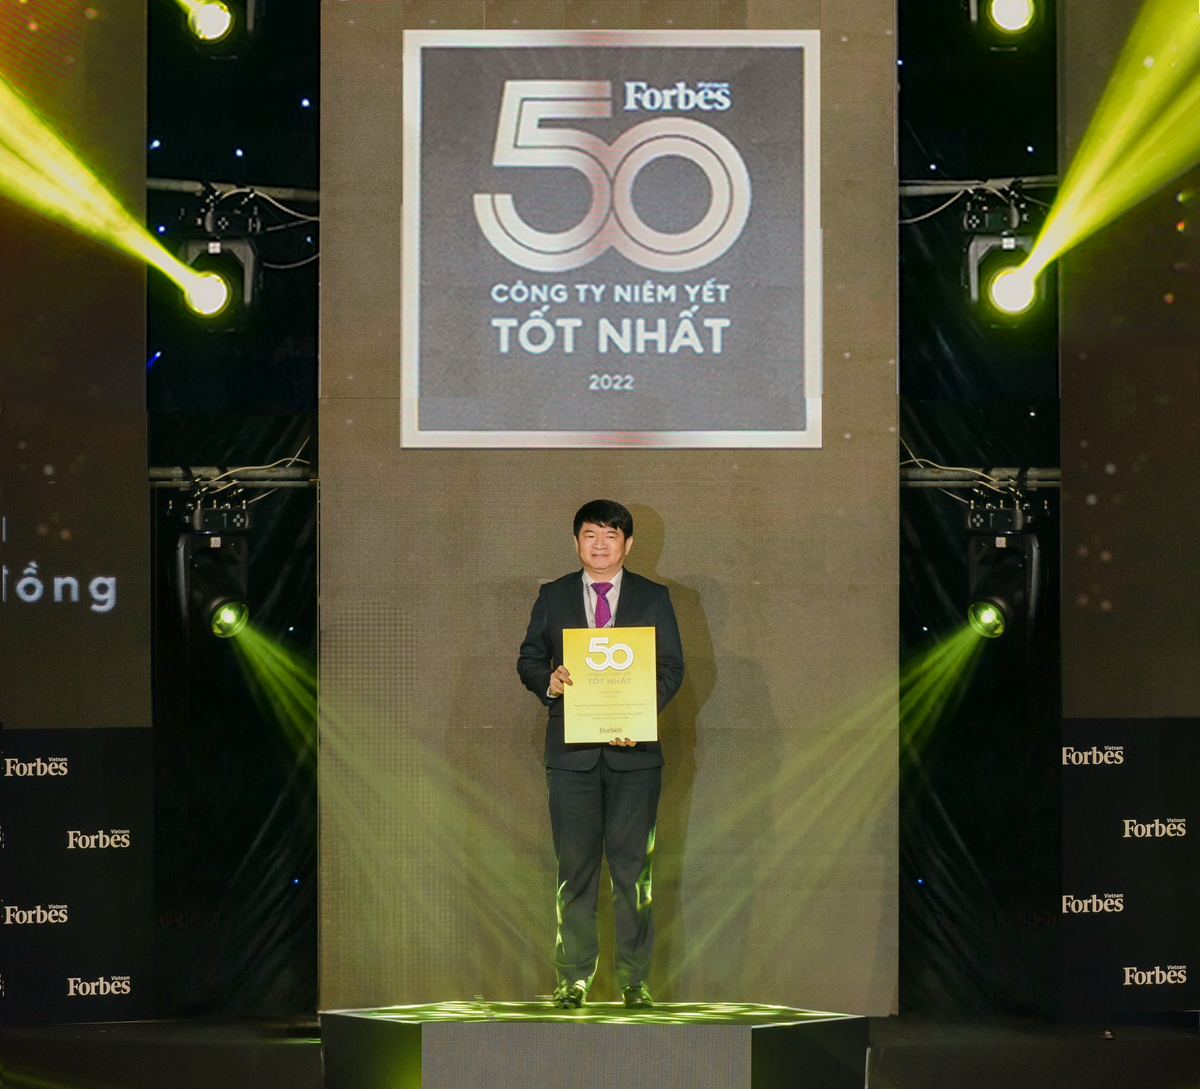 &Ocirc;ng L&ecirc; Trung Th&agrave;nh, Ph&oacute; Tổng gi&aacute;m đốc BIDV nhận chứng nhận vinh danh 50 c&ocirc;ng ty ni&ecirc;m yết tốt nhất do Forbes Việt Nam b&igrave;nh chọn